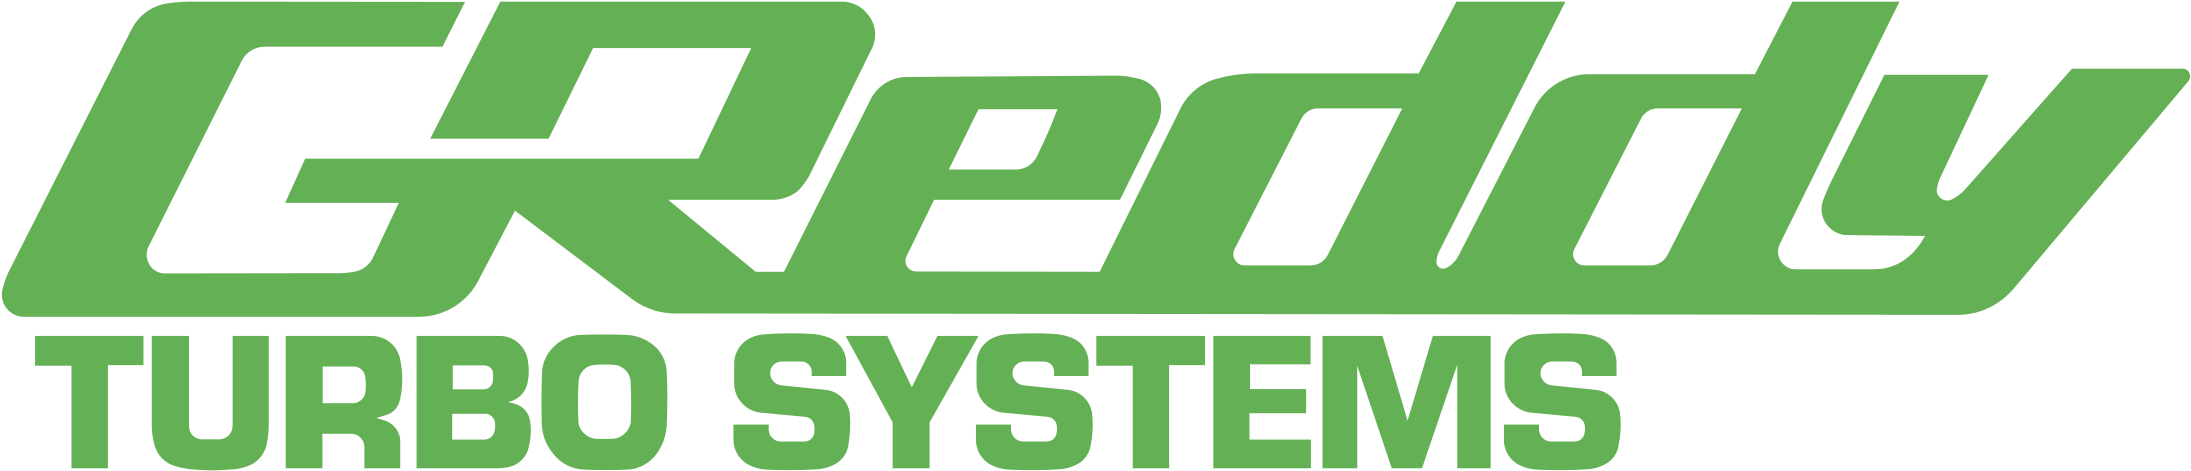 Greddy Logo - HD Greddy Systems Logo - Greddy Turbo System Logo , Free Unlimited ...